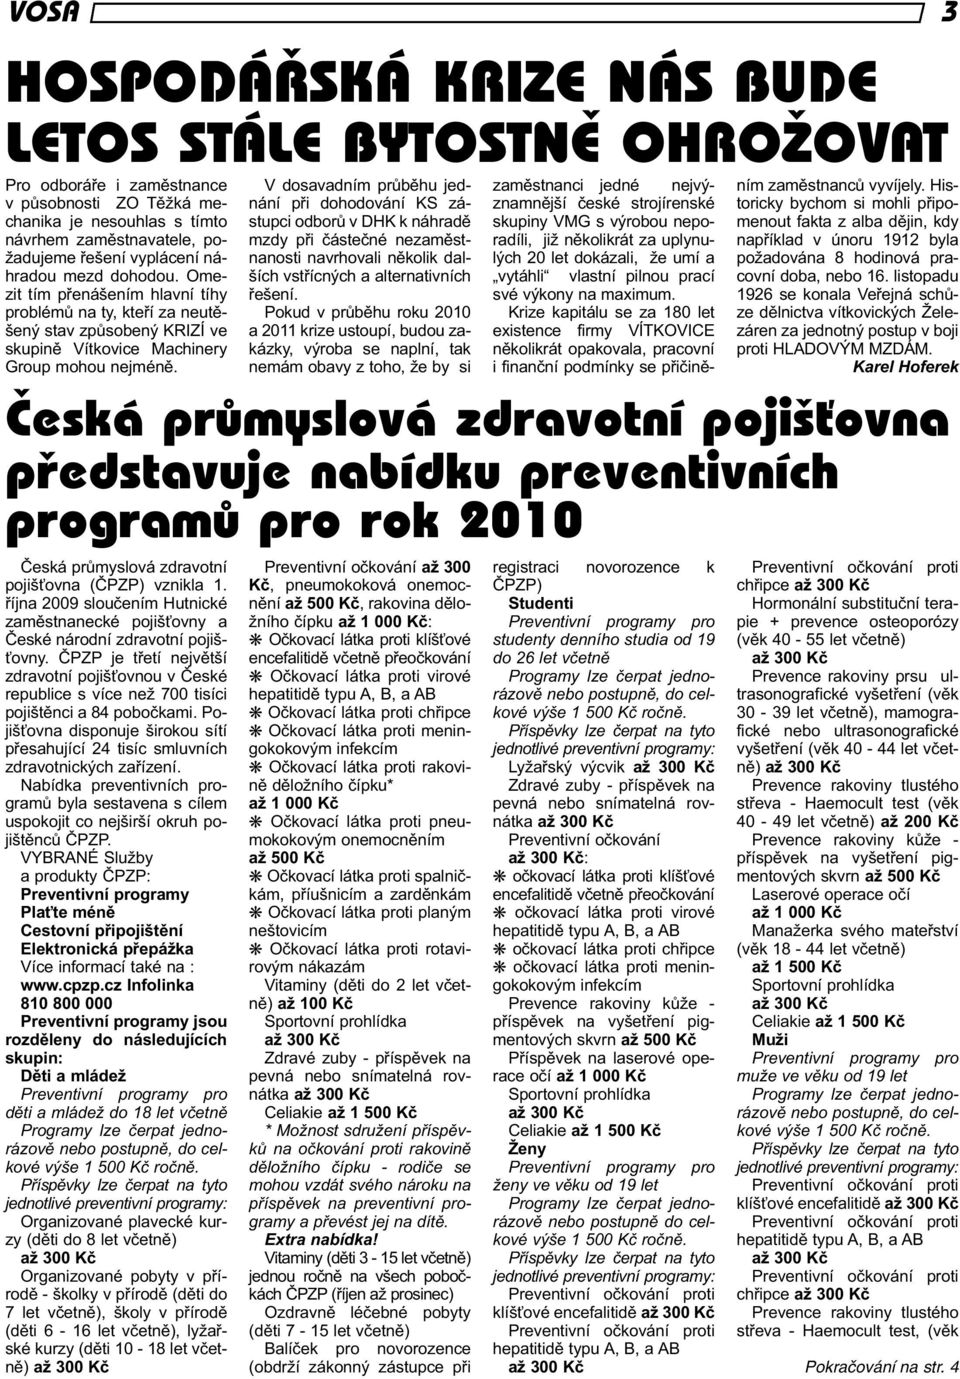 Česká průmyslová zdravotní pojišťovna (ČPZP) vznikla 1. října 2009 sloučením Hutnické zaměstnanecké pojišťovny a České národní zdravotní pojišťovny.